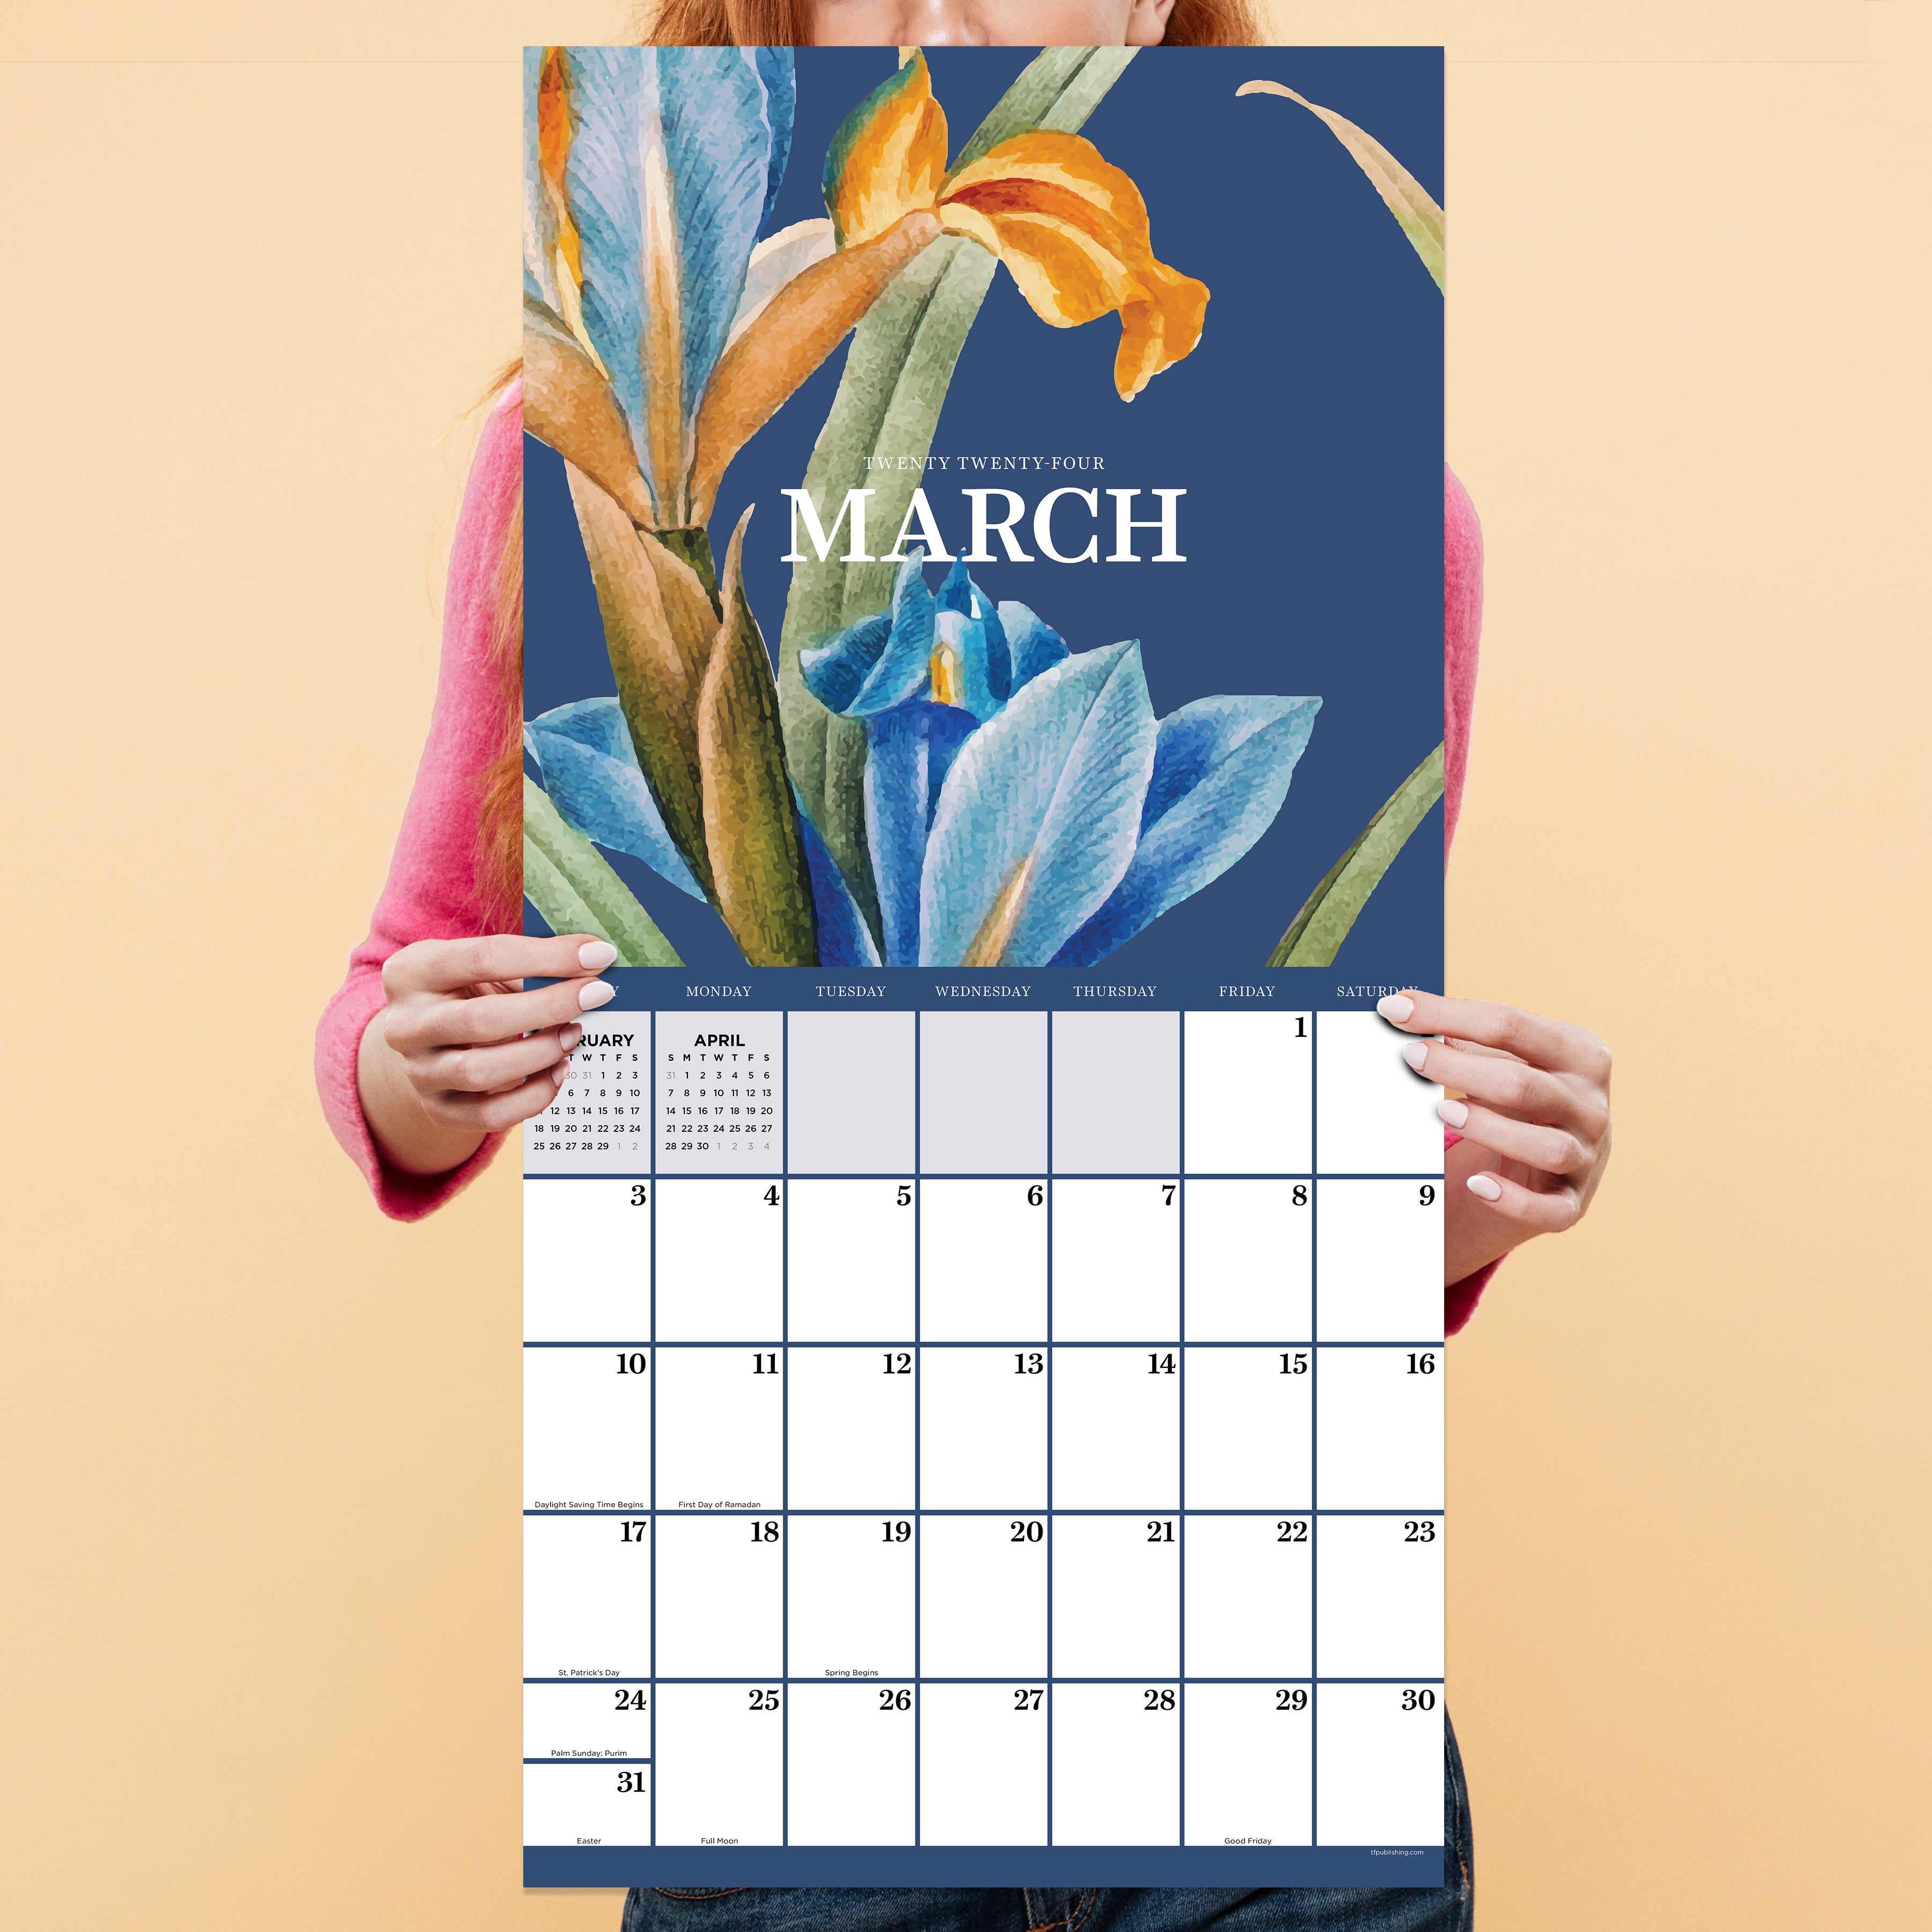 2024 Vintage Botanicals - Square Wall Calendar